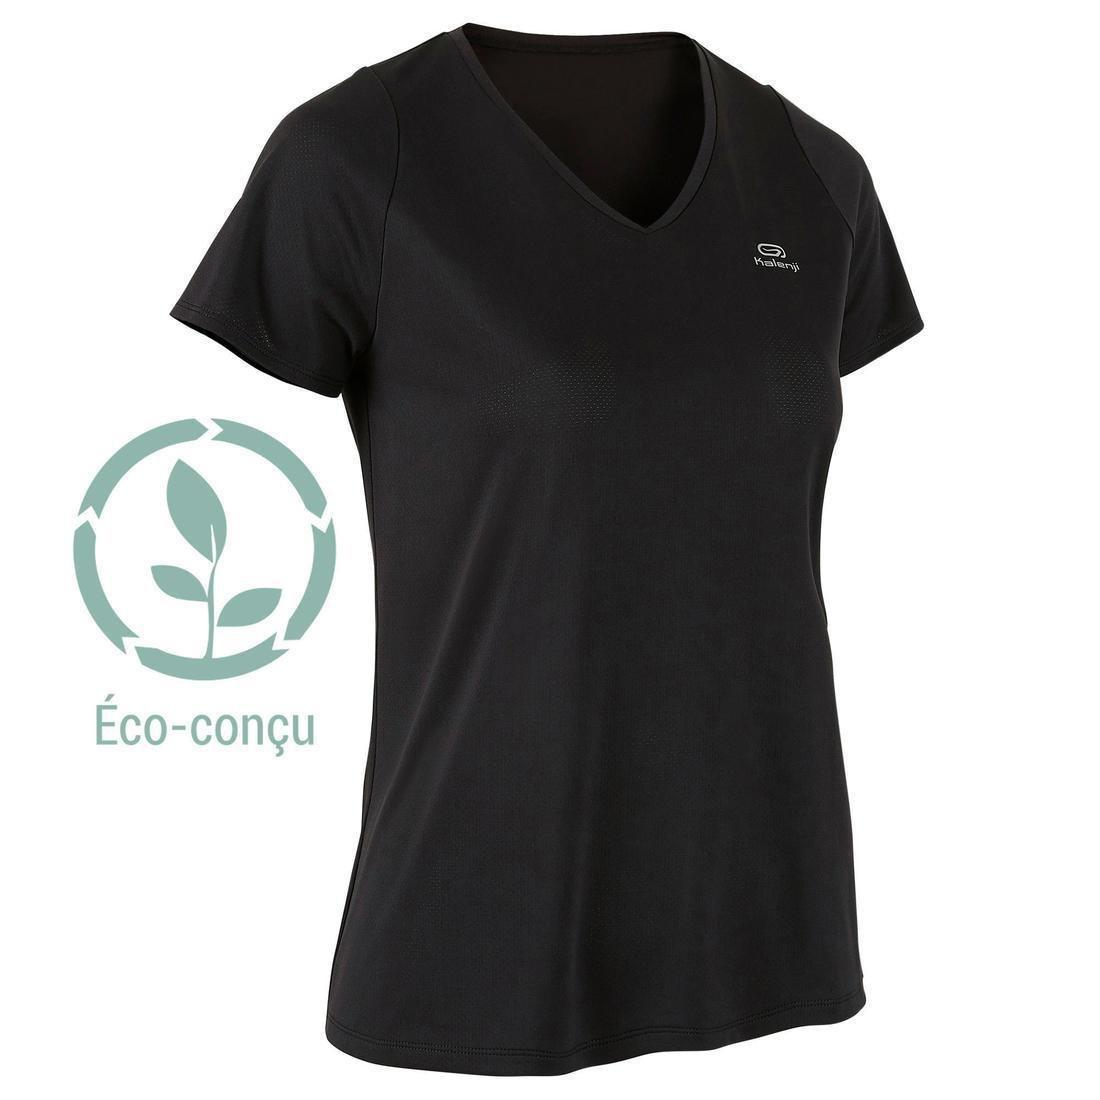 KALENJI - Women's Running Breathable Short-Sleeved T-Shirt Dry, Black